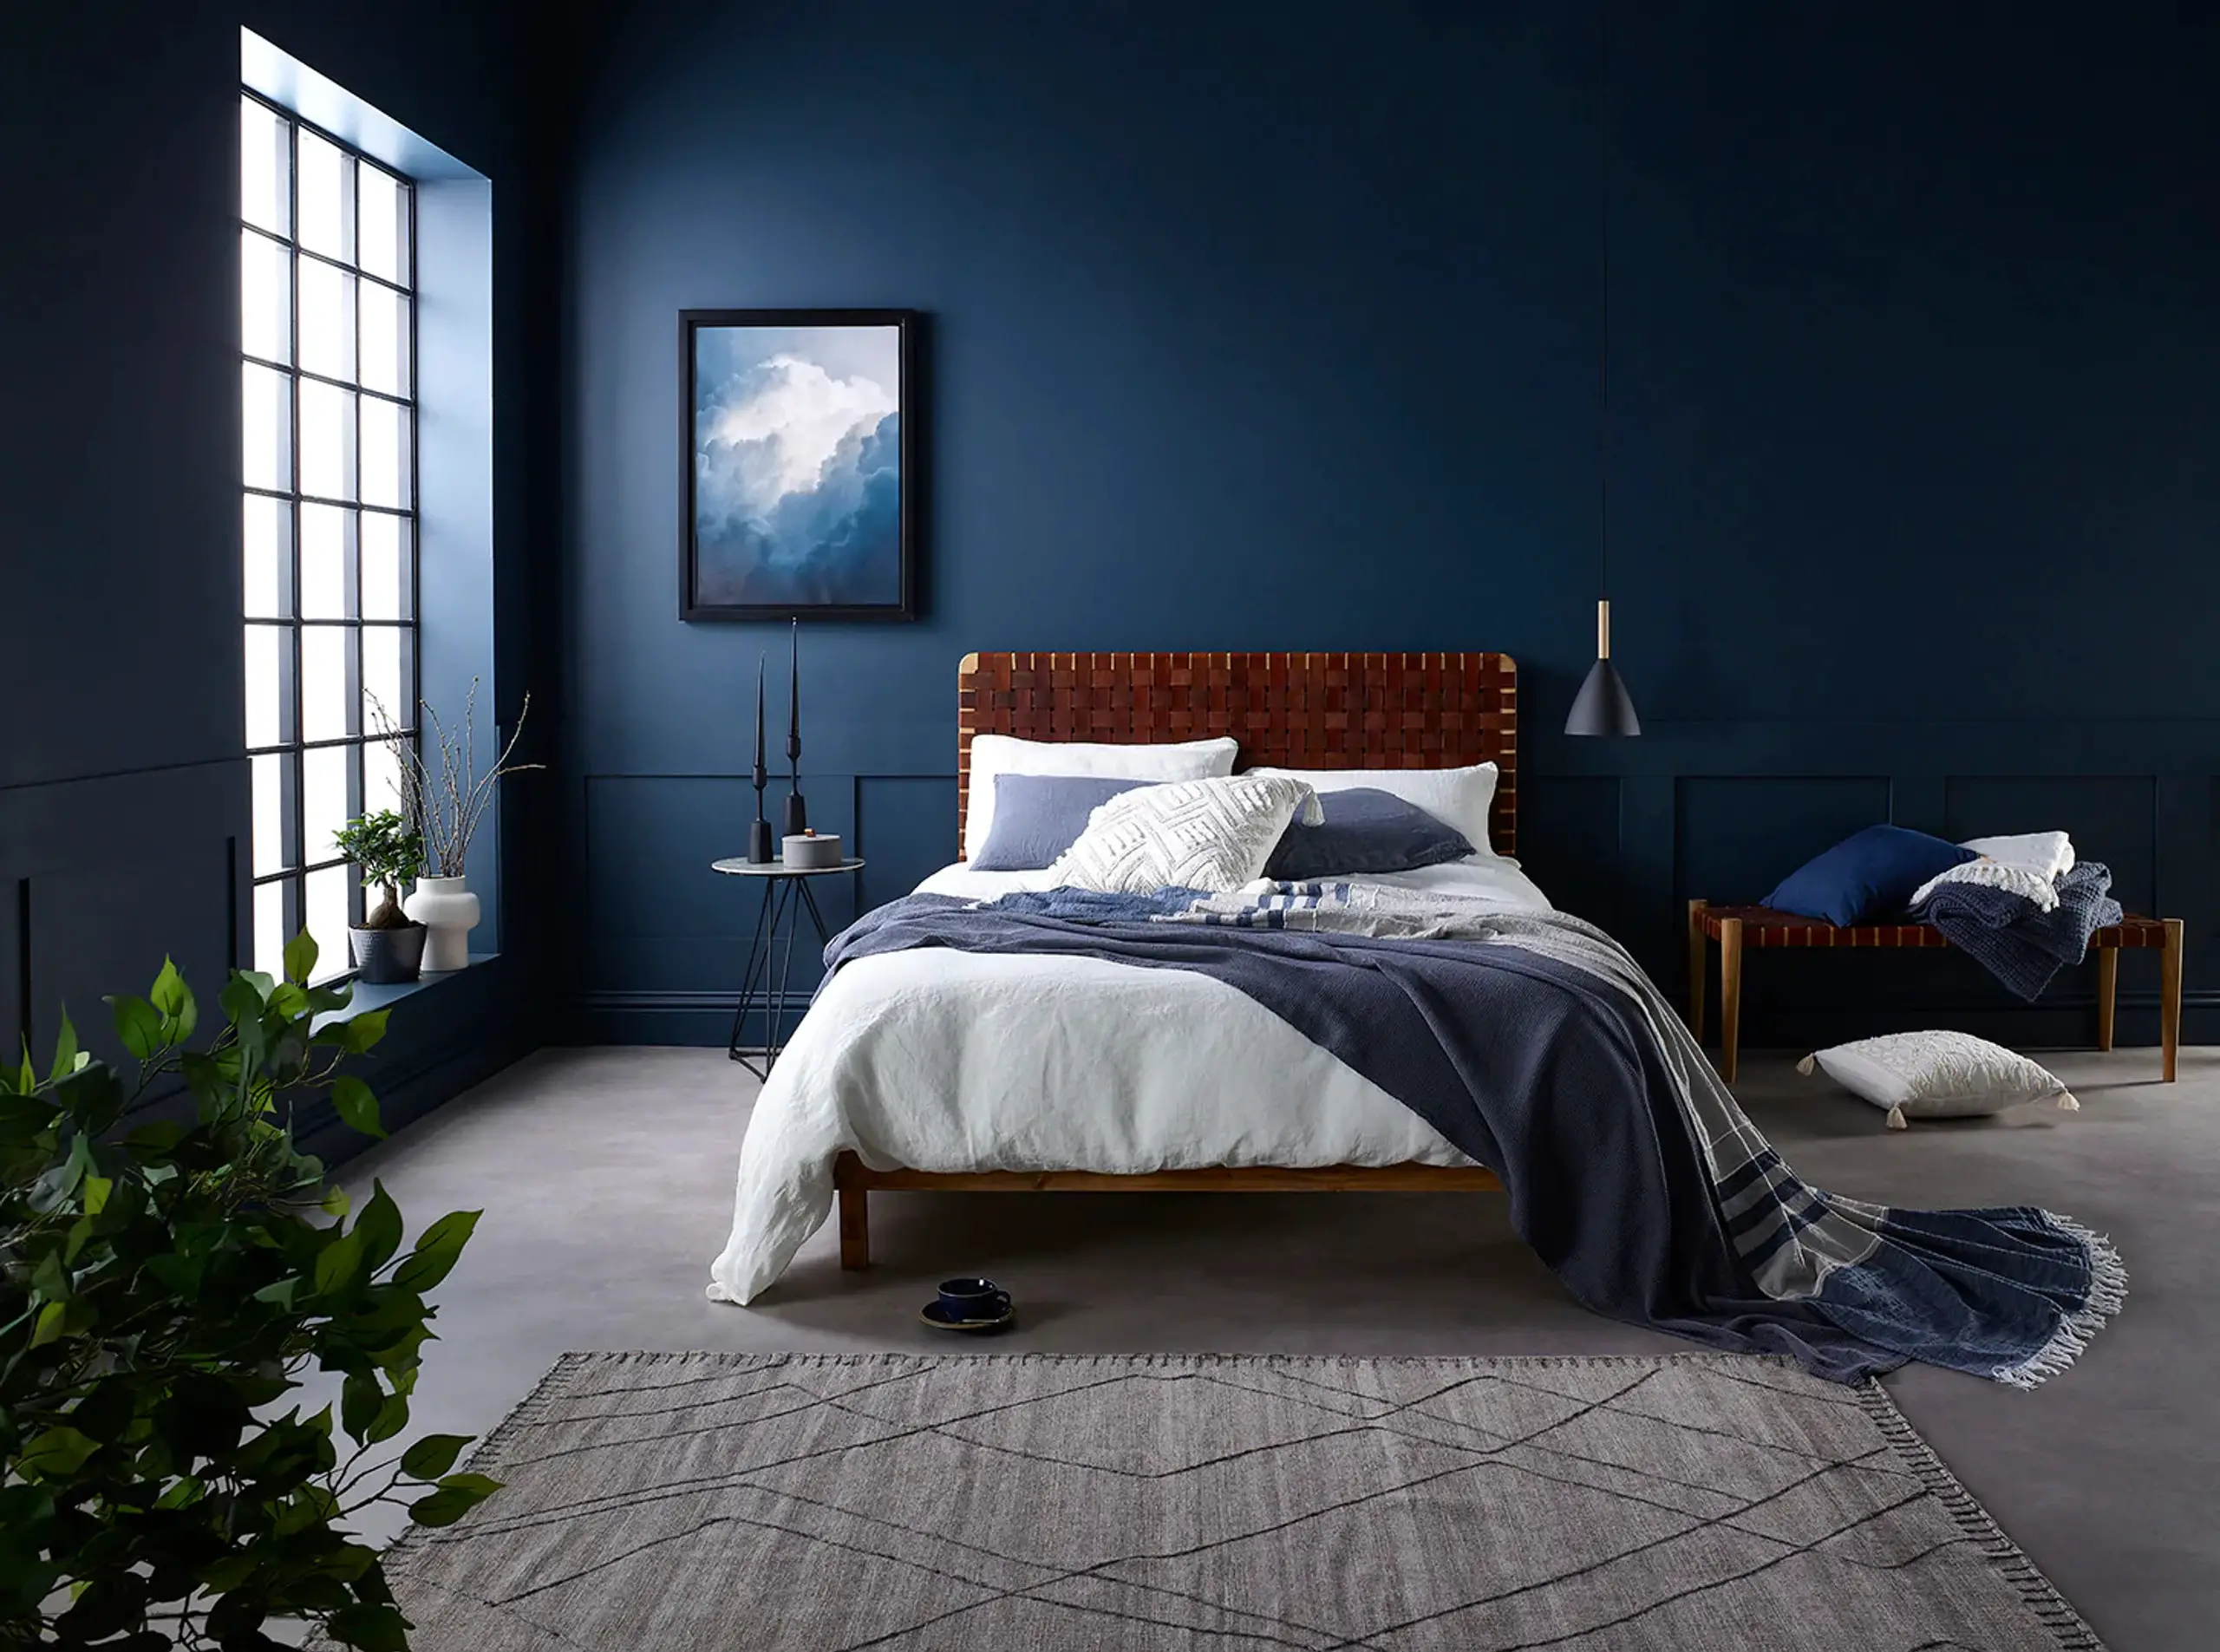 Phòng ngủ màu xanh dương tạo điểm nhấn với bức tranh bầu trời thể hiện sự điềm tĩnh, đáng tin cậy